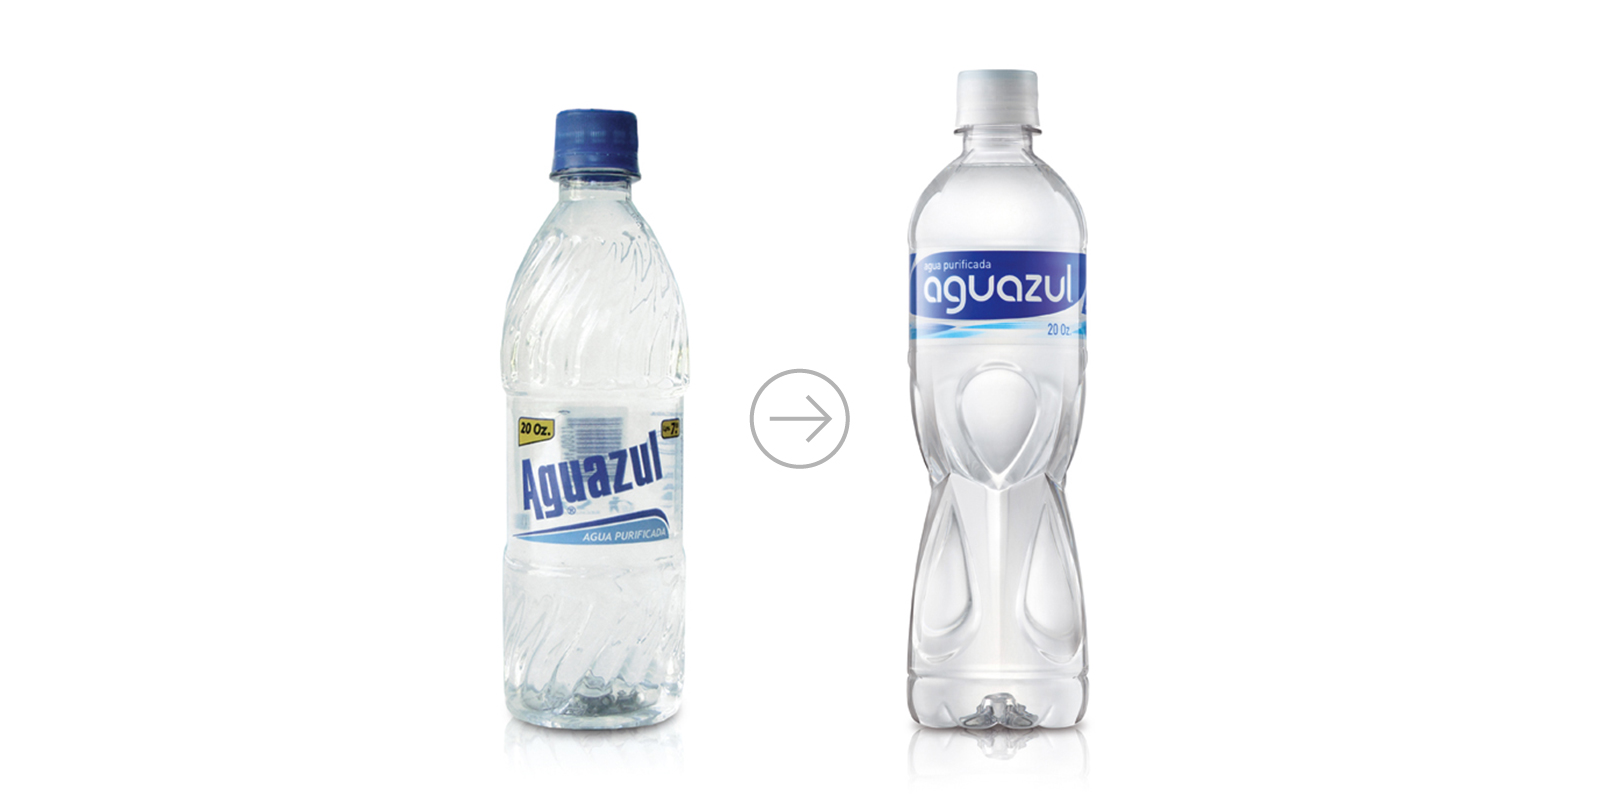 Comparación del antes y después diseño de la botella de agua purificada Aguazul por Tridimage.